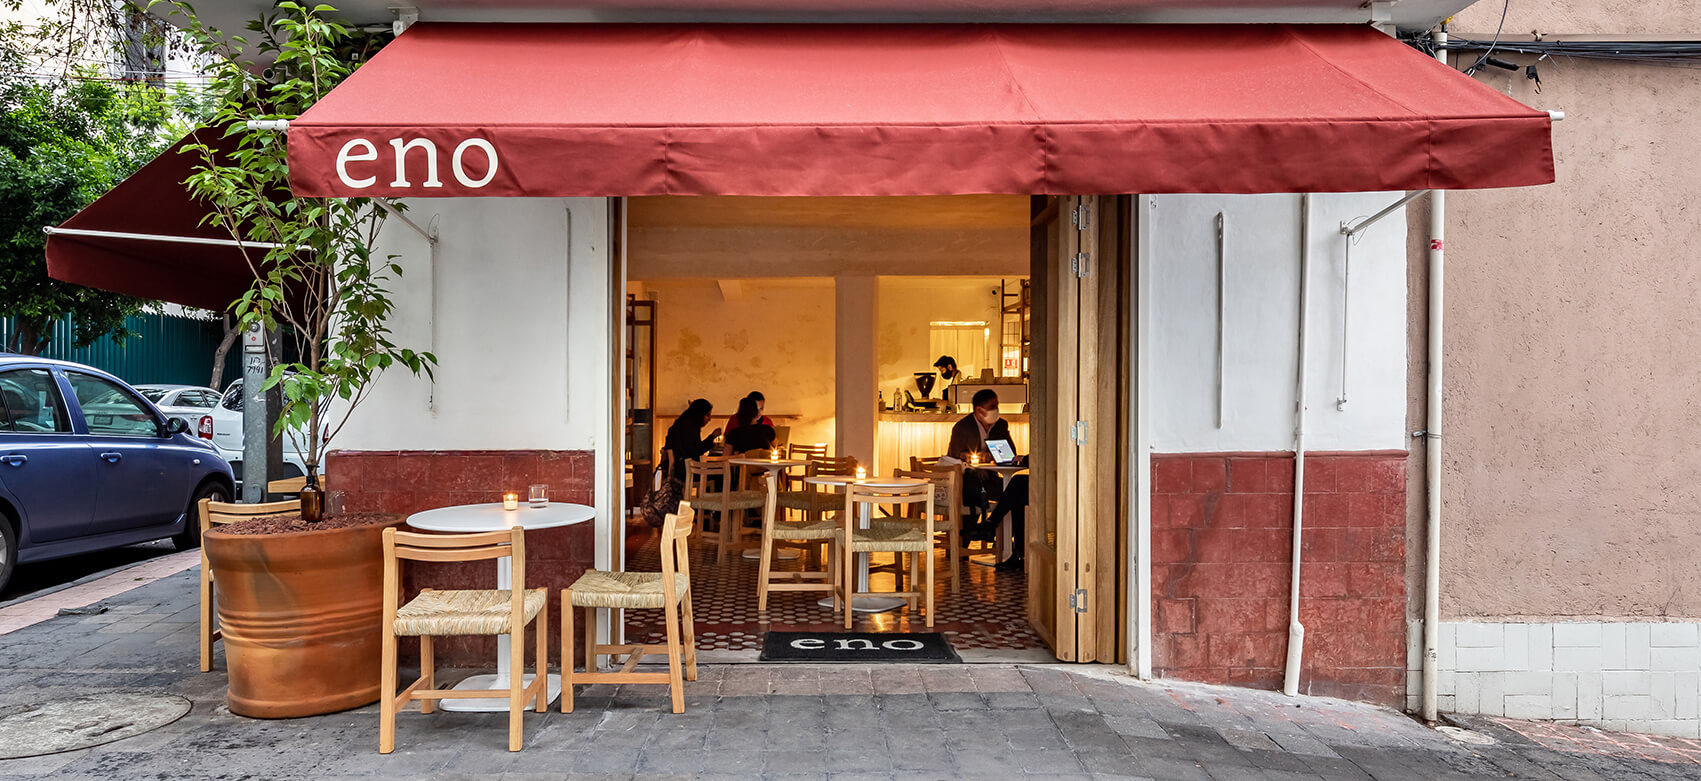 Entrada principal a Eno Toki, con una fachada blanca y roja acompañado de mesas para los clientes